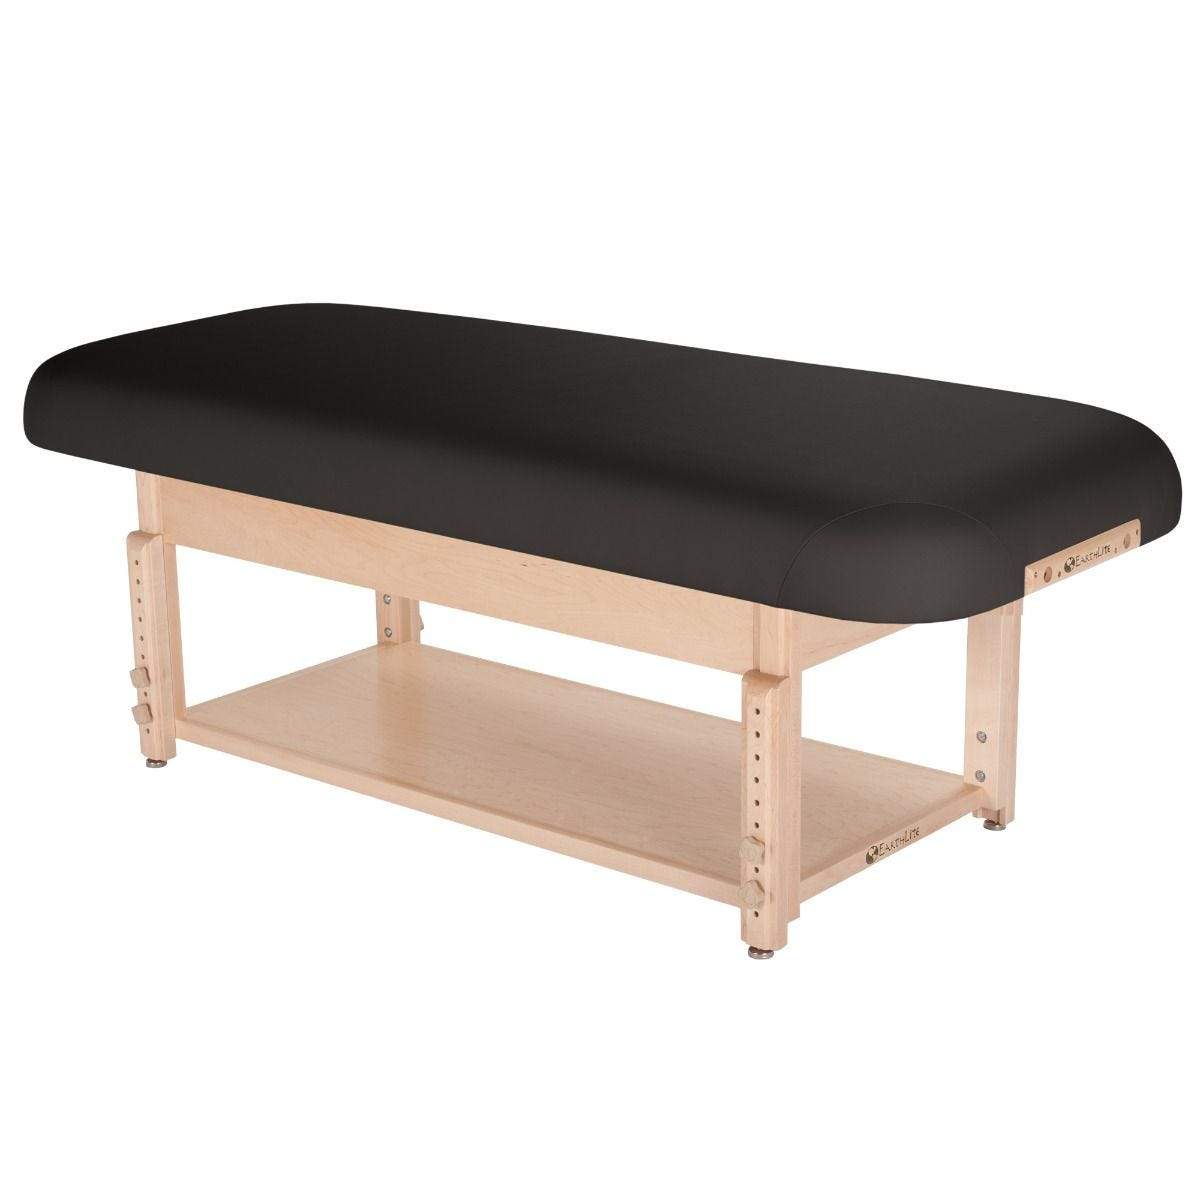 Earthlite Sedona Flat 28" Wide Shelf Base Stationary Spa & Massage Table